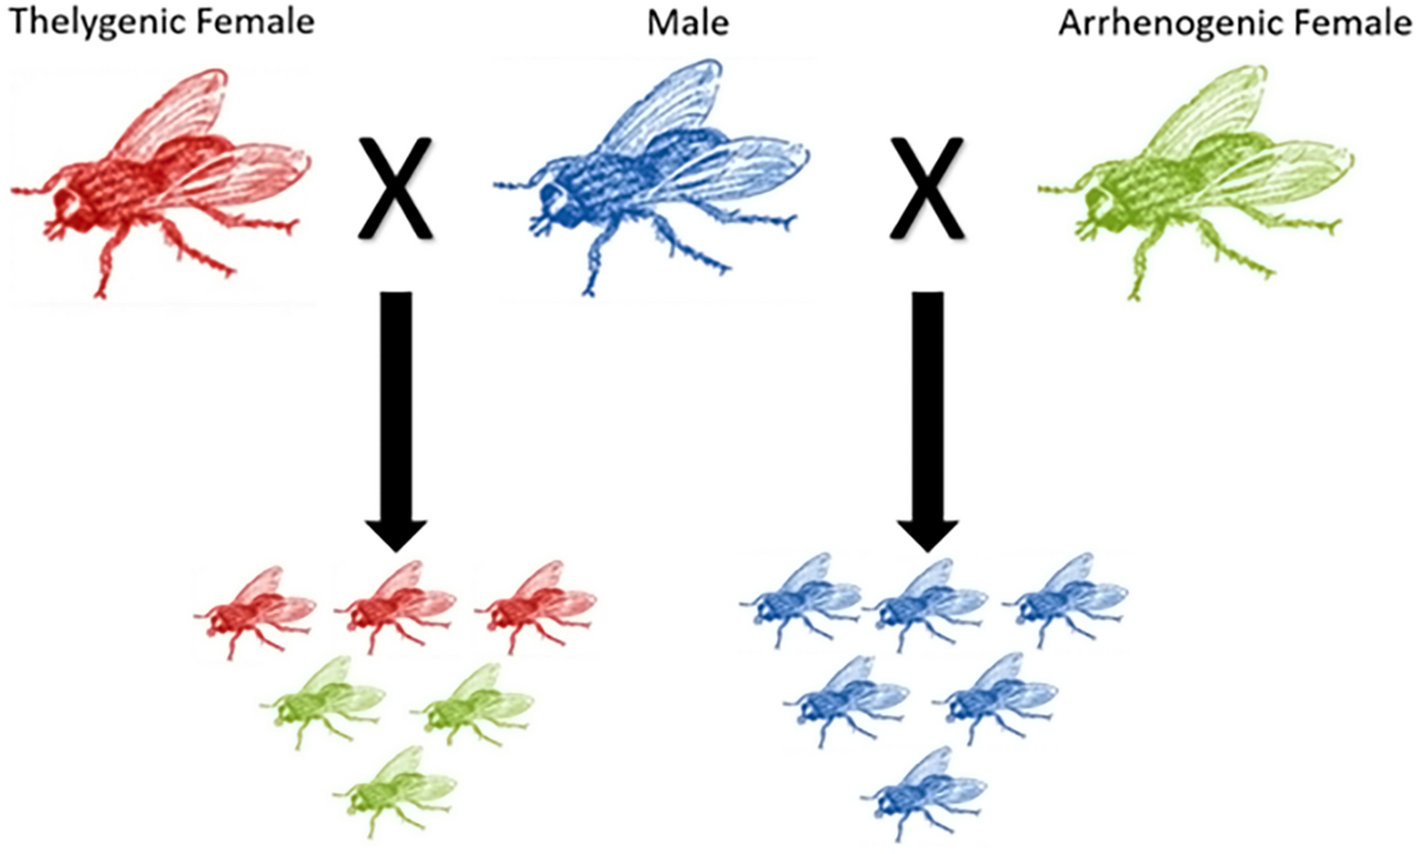 Scientists reverse sex roles in fruit flies